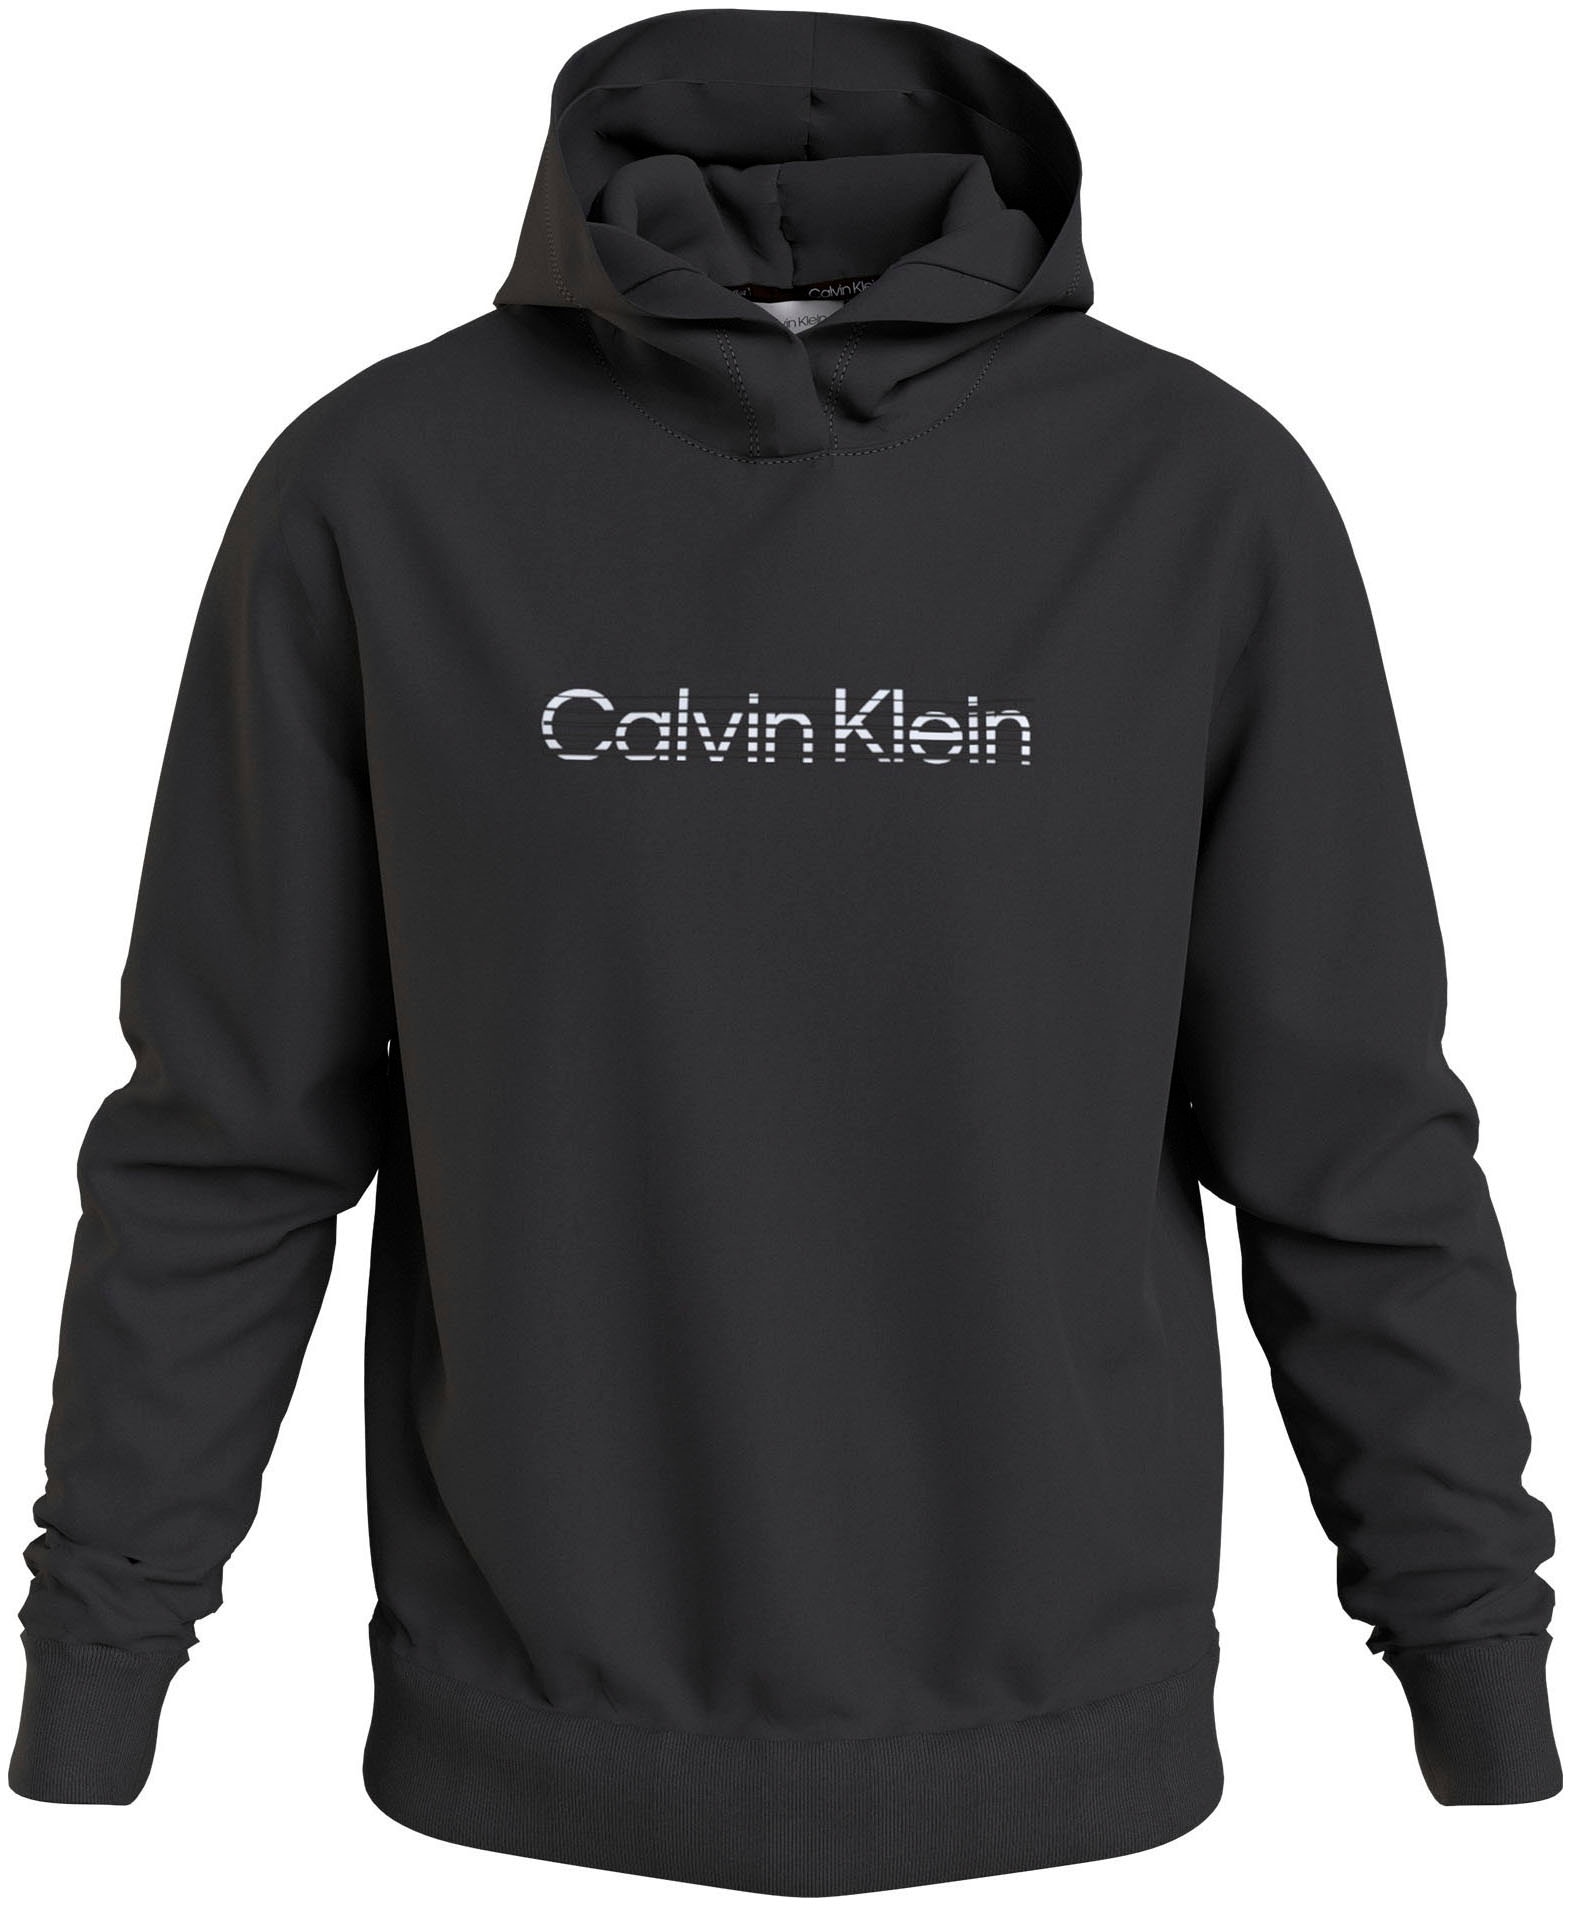 Calvin Klein günstig kaufen ▻